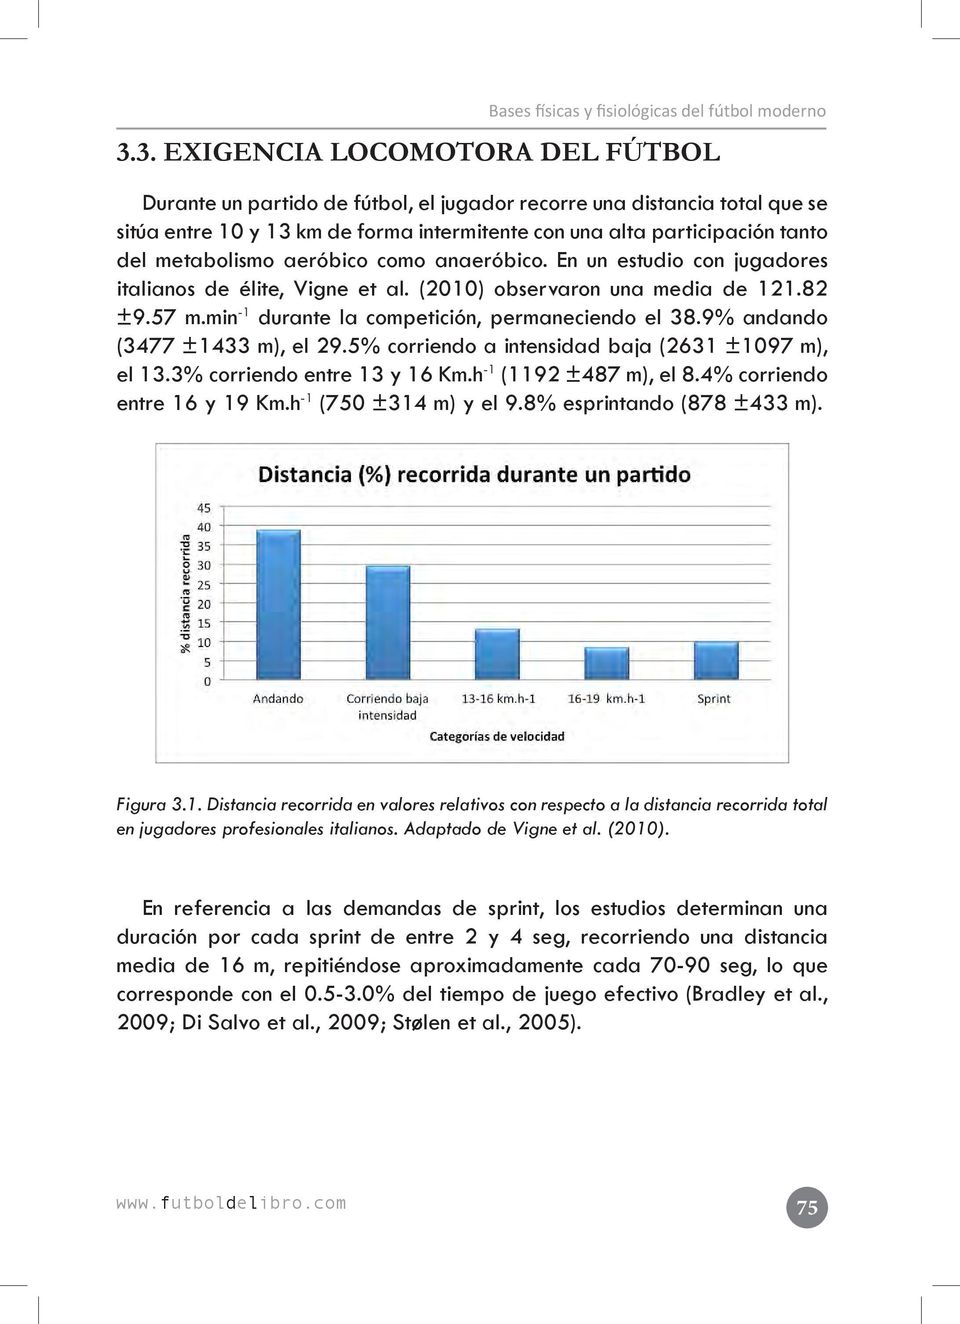 metabolismo aeróbico como anaeróbico. En un estudio con jugadores italianos de élite, Vigne et al. (2010) observaron una media de 121.82 ±9.57 m.min -1 durante la competición, permaneciendo el 38.